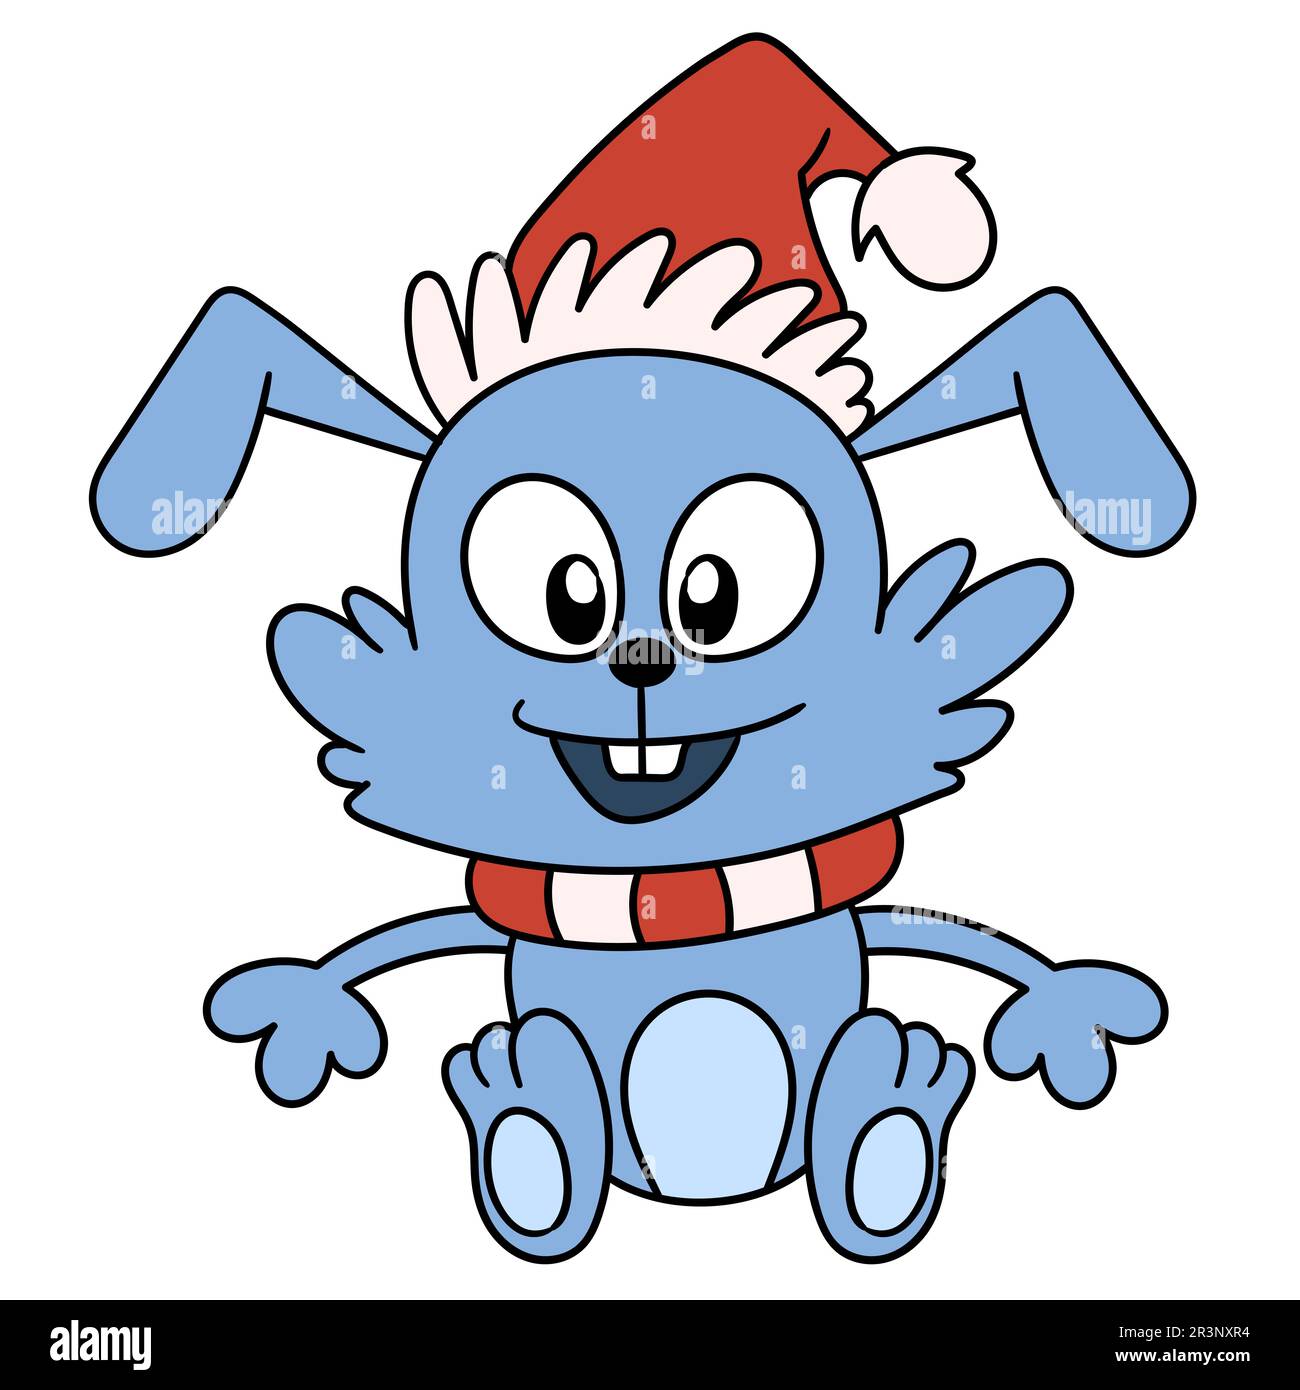 Kaninchentiere freuen sich auf Weihnachten. Bild des doodle-Symbols Stockfoto